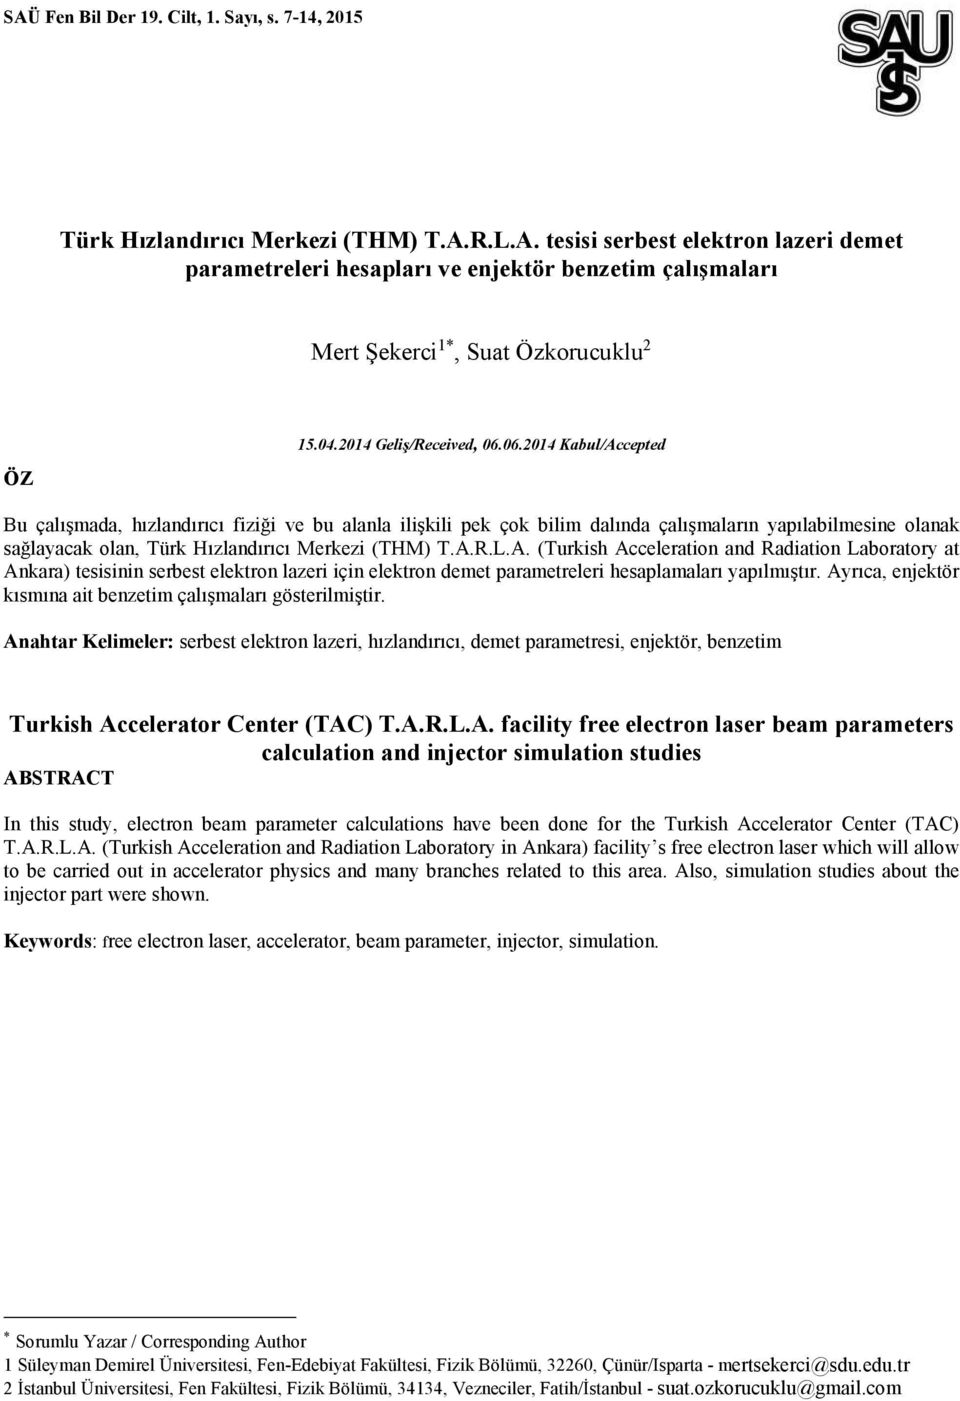 06.014 Kabul/Accepted Bu çalışmada, hızlandırıcı fiziği ve bu alanla ilişkili pek çok bilim dalında çalışmaların yapılabilmesine olanak sağlayacak olan, Türk Hızlandırıcı Merkezi (THM) T.A.R.L.A. (Turkish Acceleration and Radiation Laboratory at Ankara) tesisinin serbest elektron lazeri için elektron demet parametreleri hesaplamaları yapılmıştır.